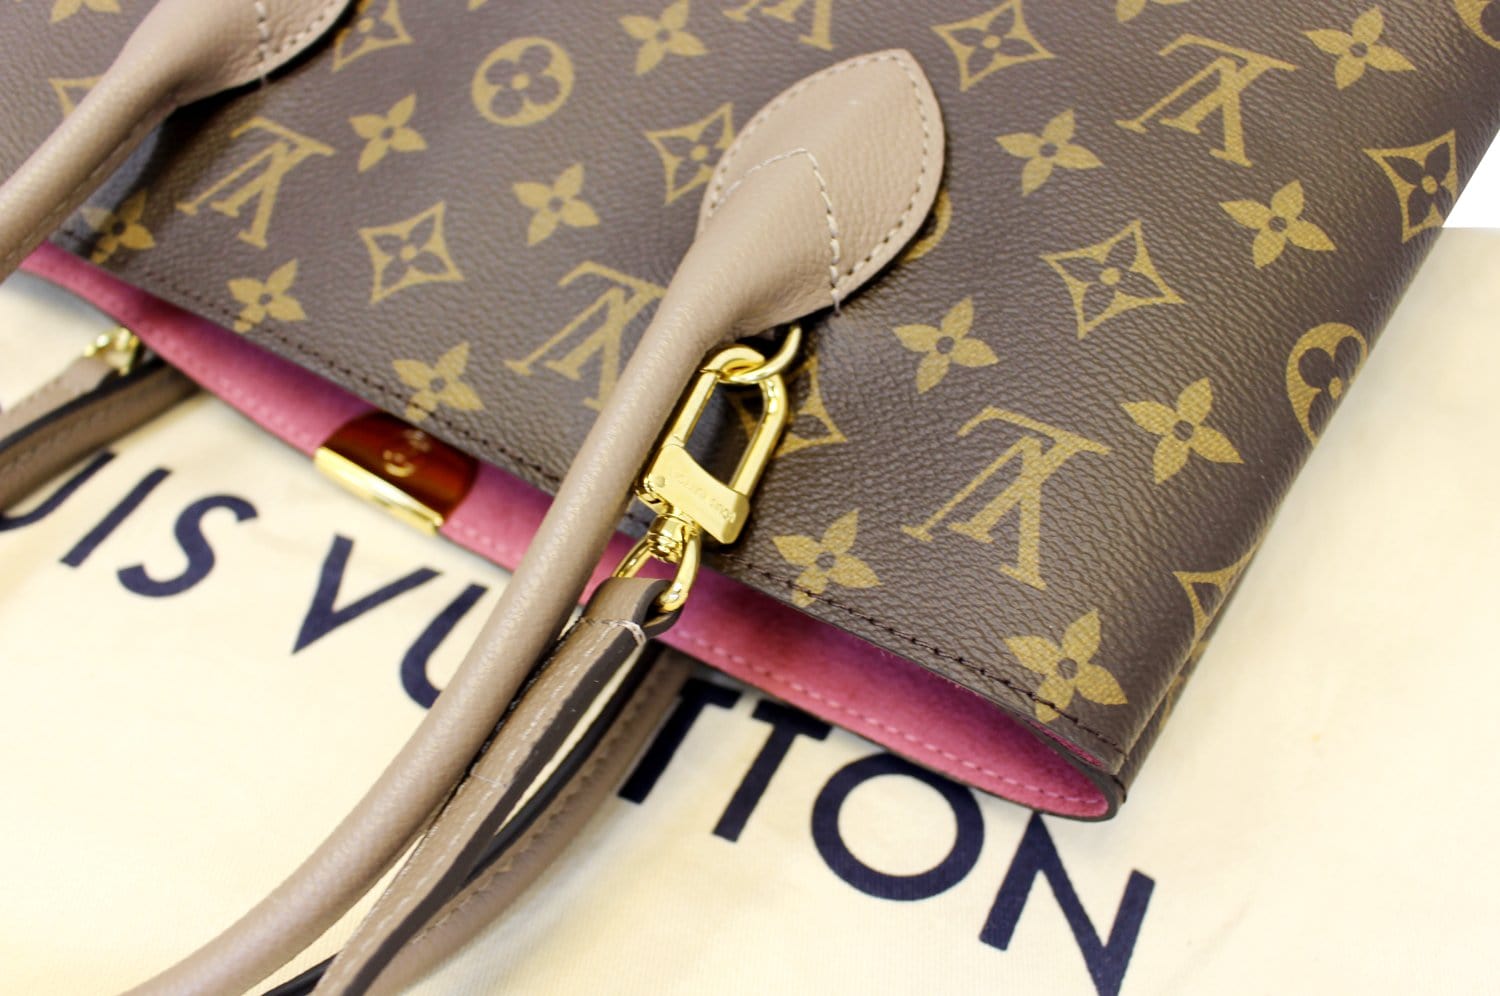 Louis Vuitton, a monogram canvas 'Flandrin' handbag, 2006. - Bukowskis